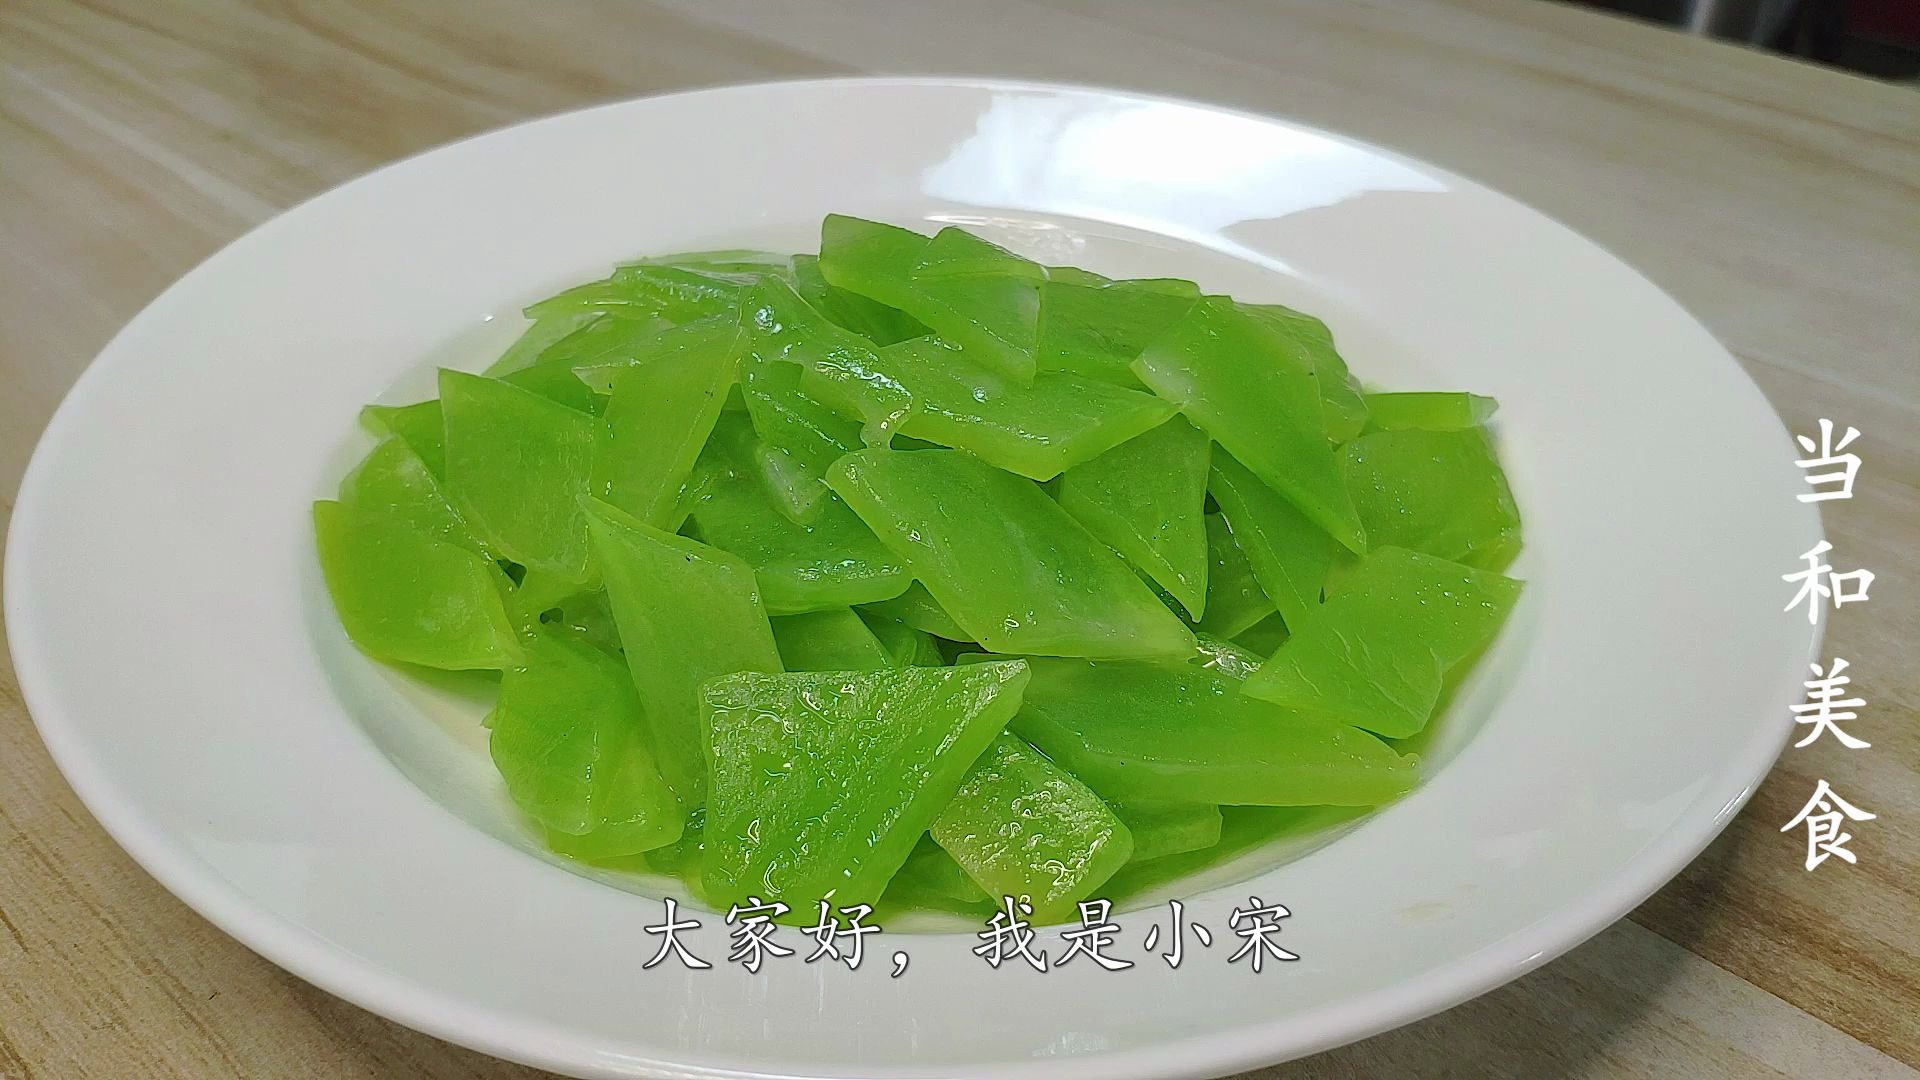 莴苣炒韭菜,莴苣炒韭菜的家常做法 - 美食杰莴苣炒韭菜做法大全